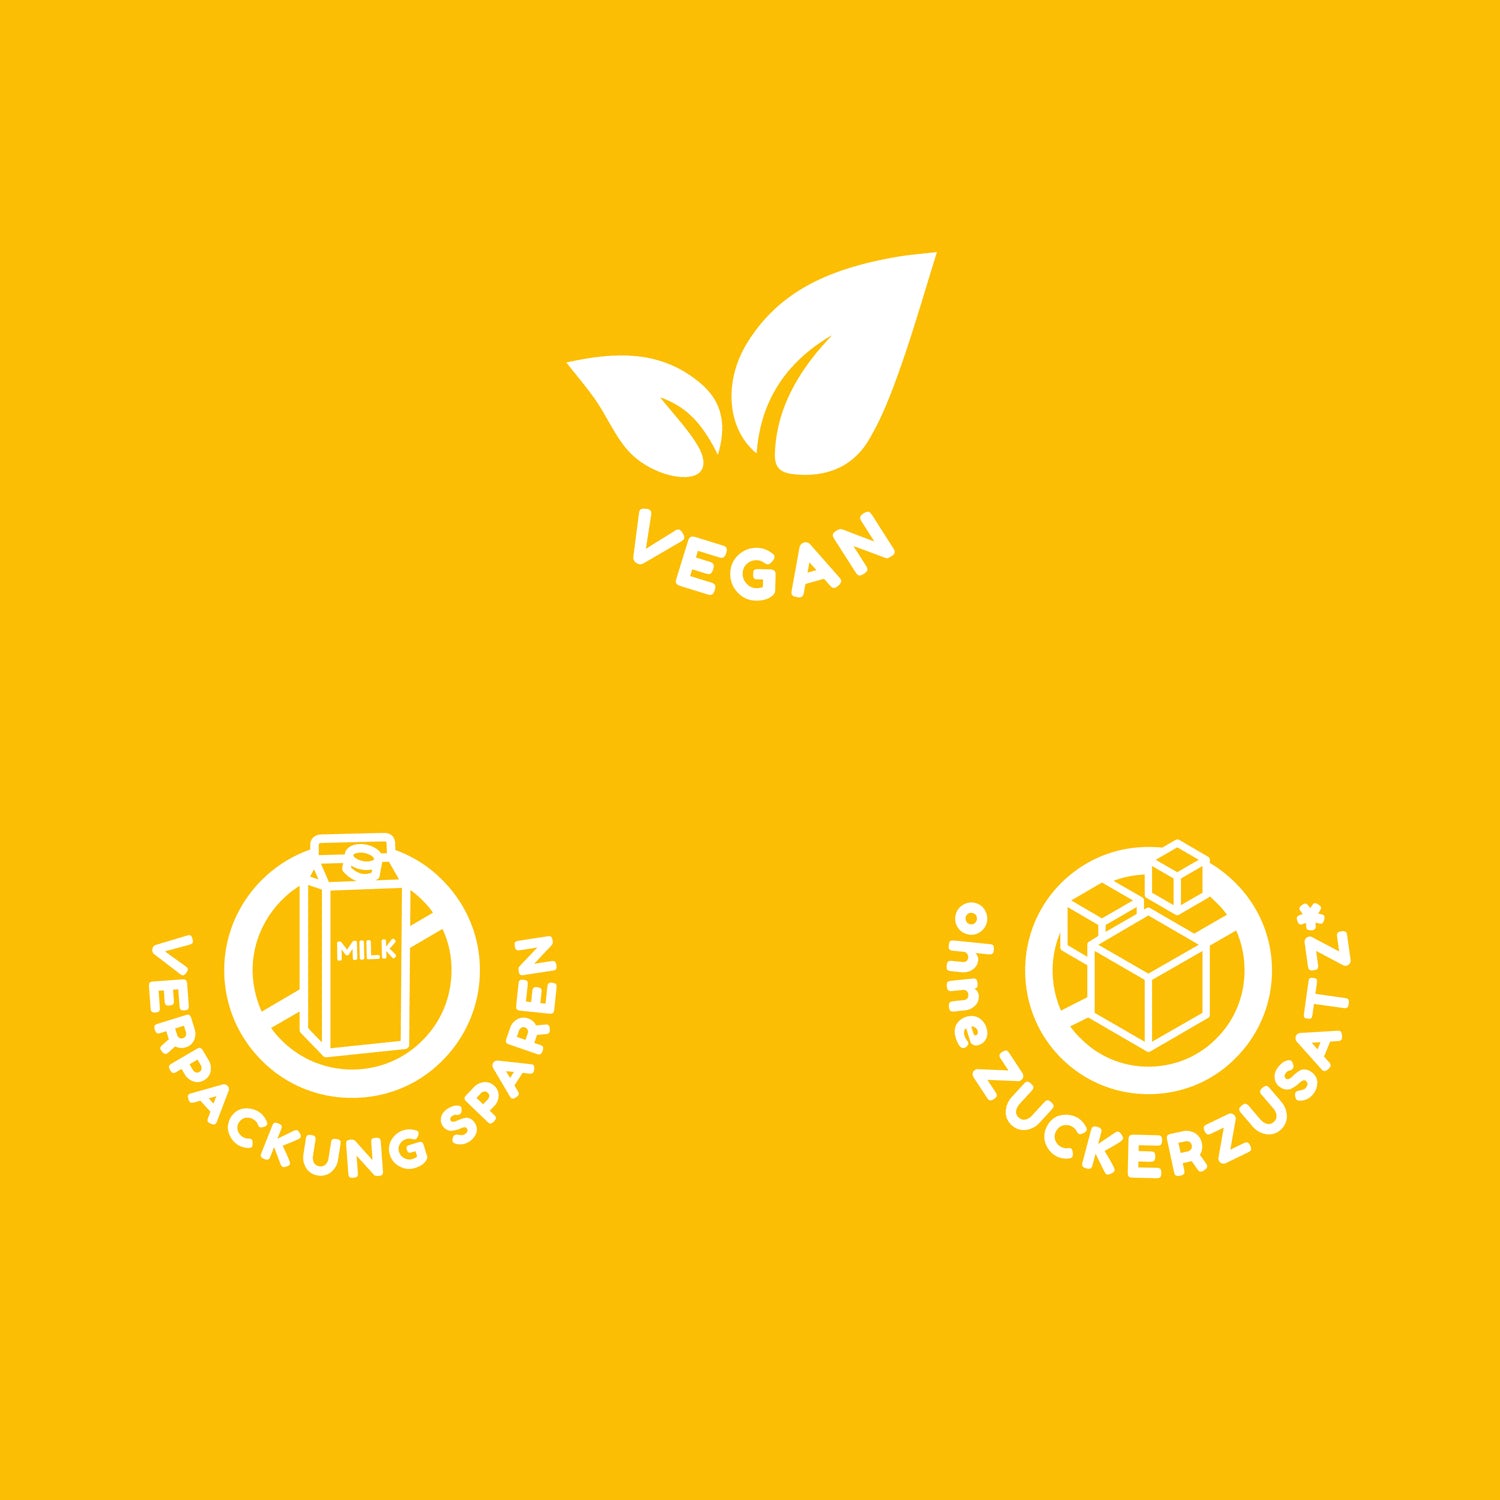 Drinkmich Icons für Hinweise zu den Produktem vegan verpackungssparend ohne zuckerzusatz